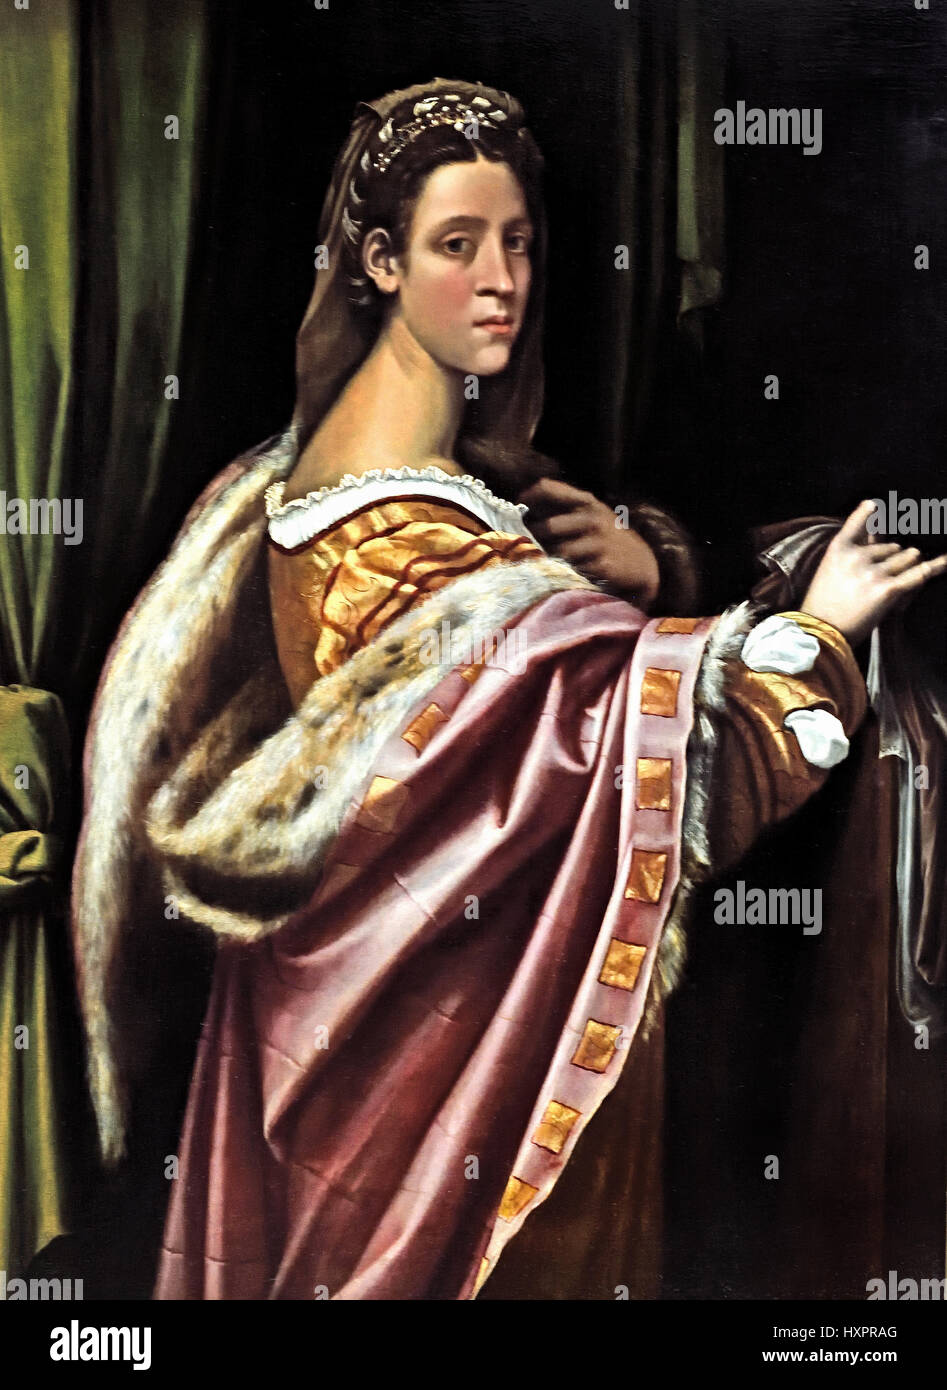 Portrait of a Lady 1520 Sebastiano del Piombo 1485 - 1547 Italy Italian Stock Photo